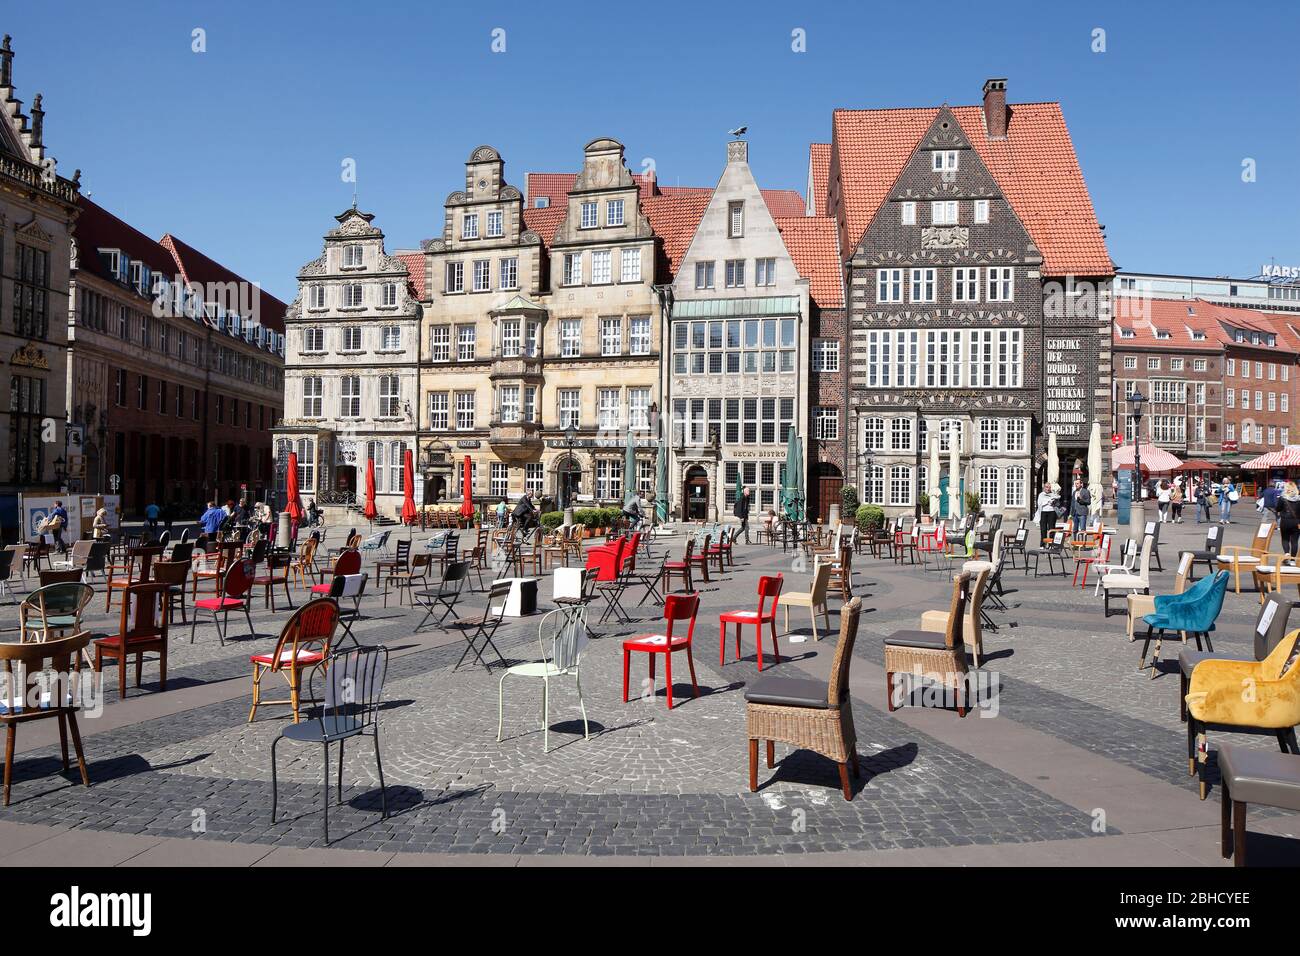 Sillas vacías protestan por los gerentes contra cierres de corona en la plaza del mercado de Bremen, Bremen, Alemania, Europa Foto de stock